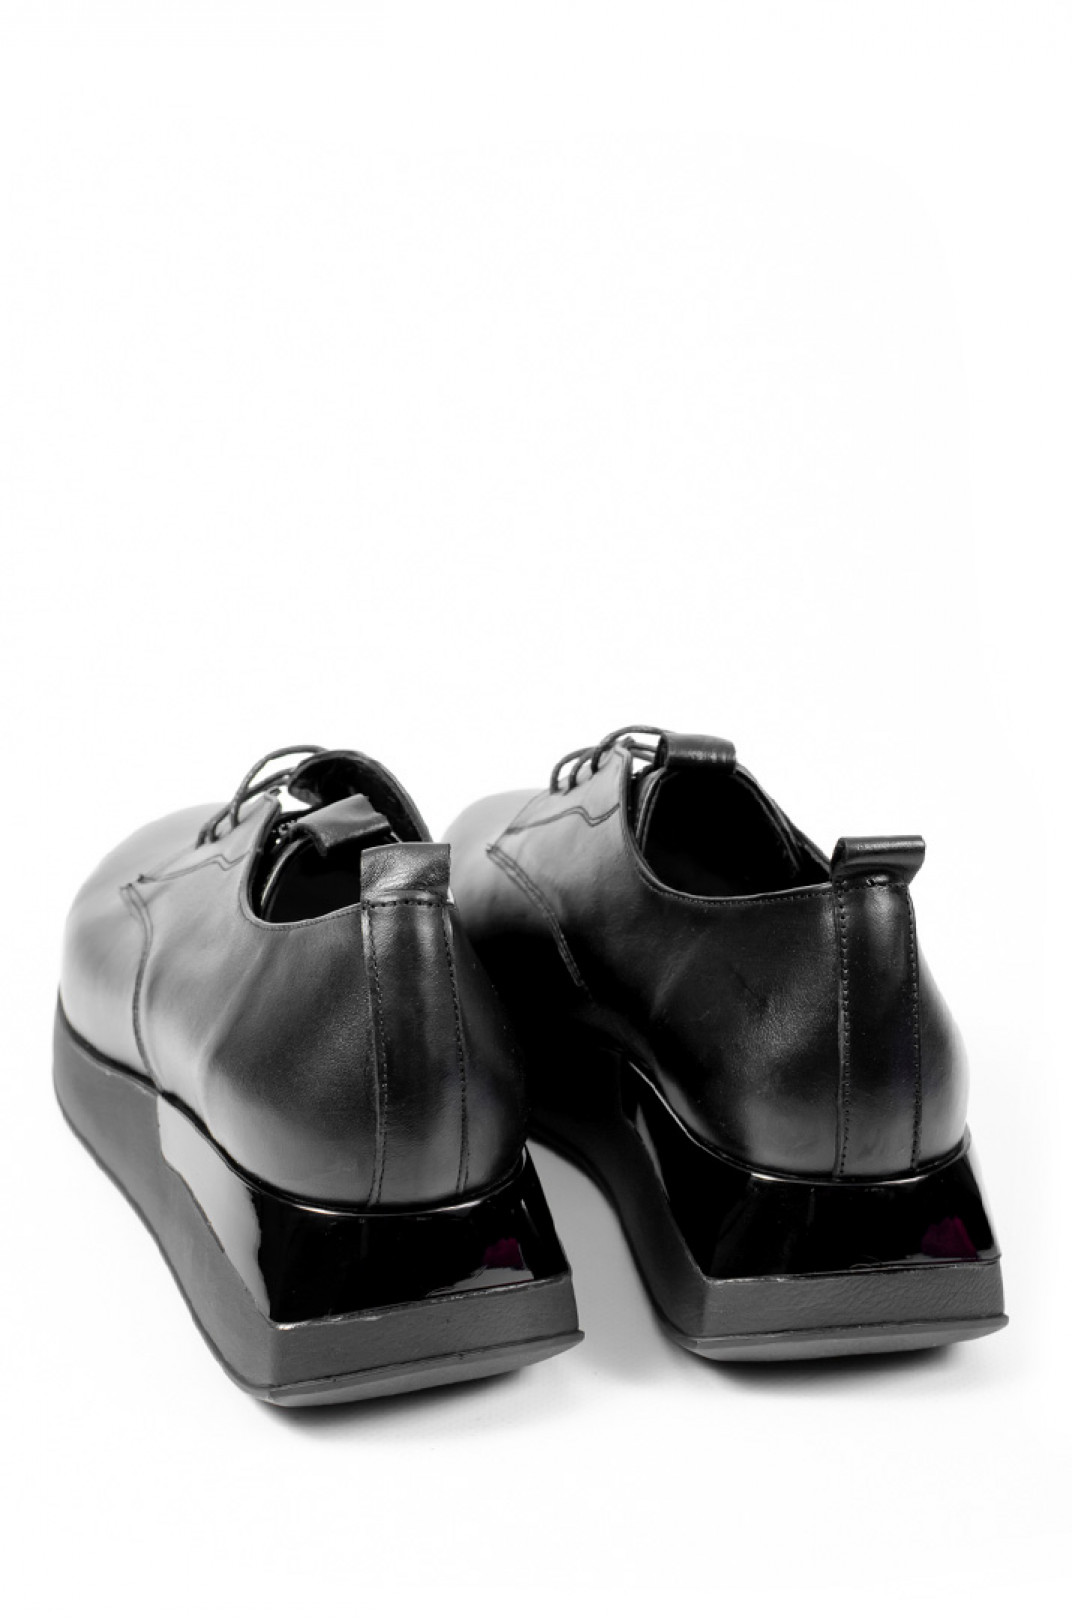 Туфлі шкіряні чорні на шнурках з декором із стразів великих розмірів